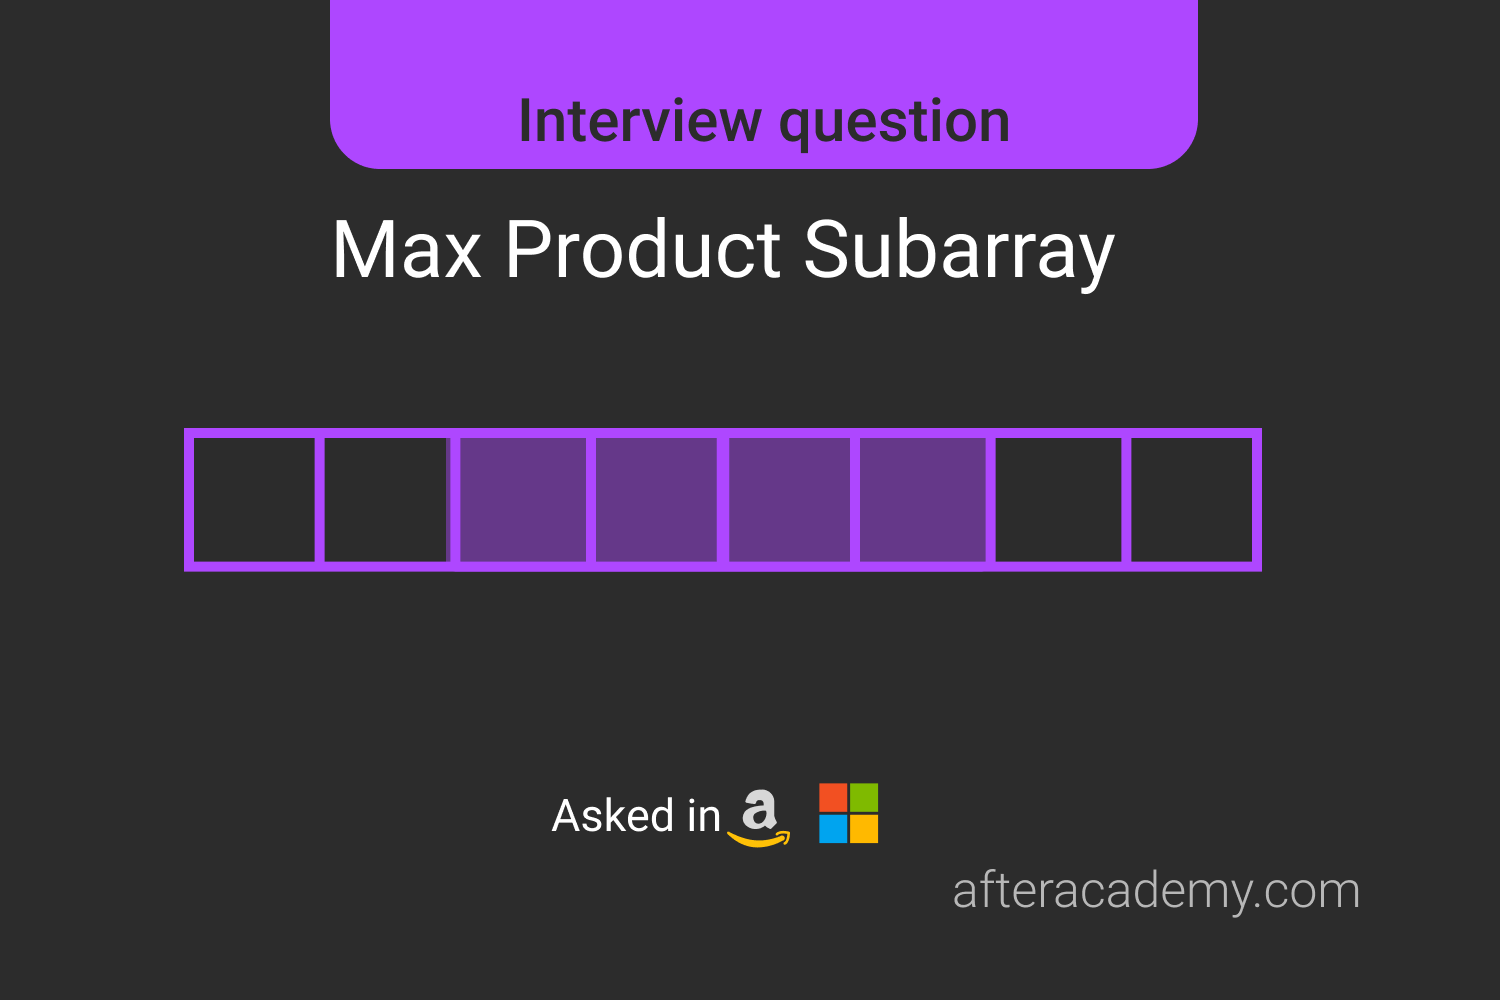 Max Product Subarray